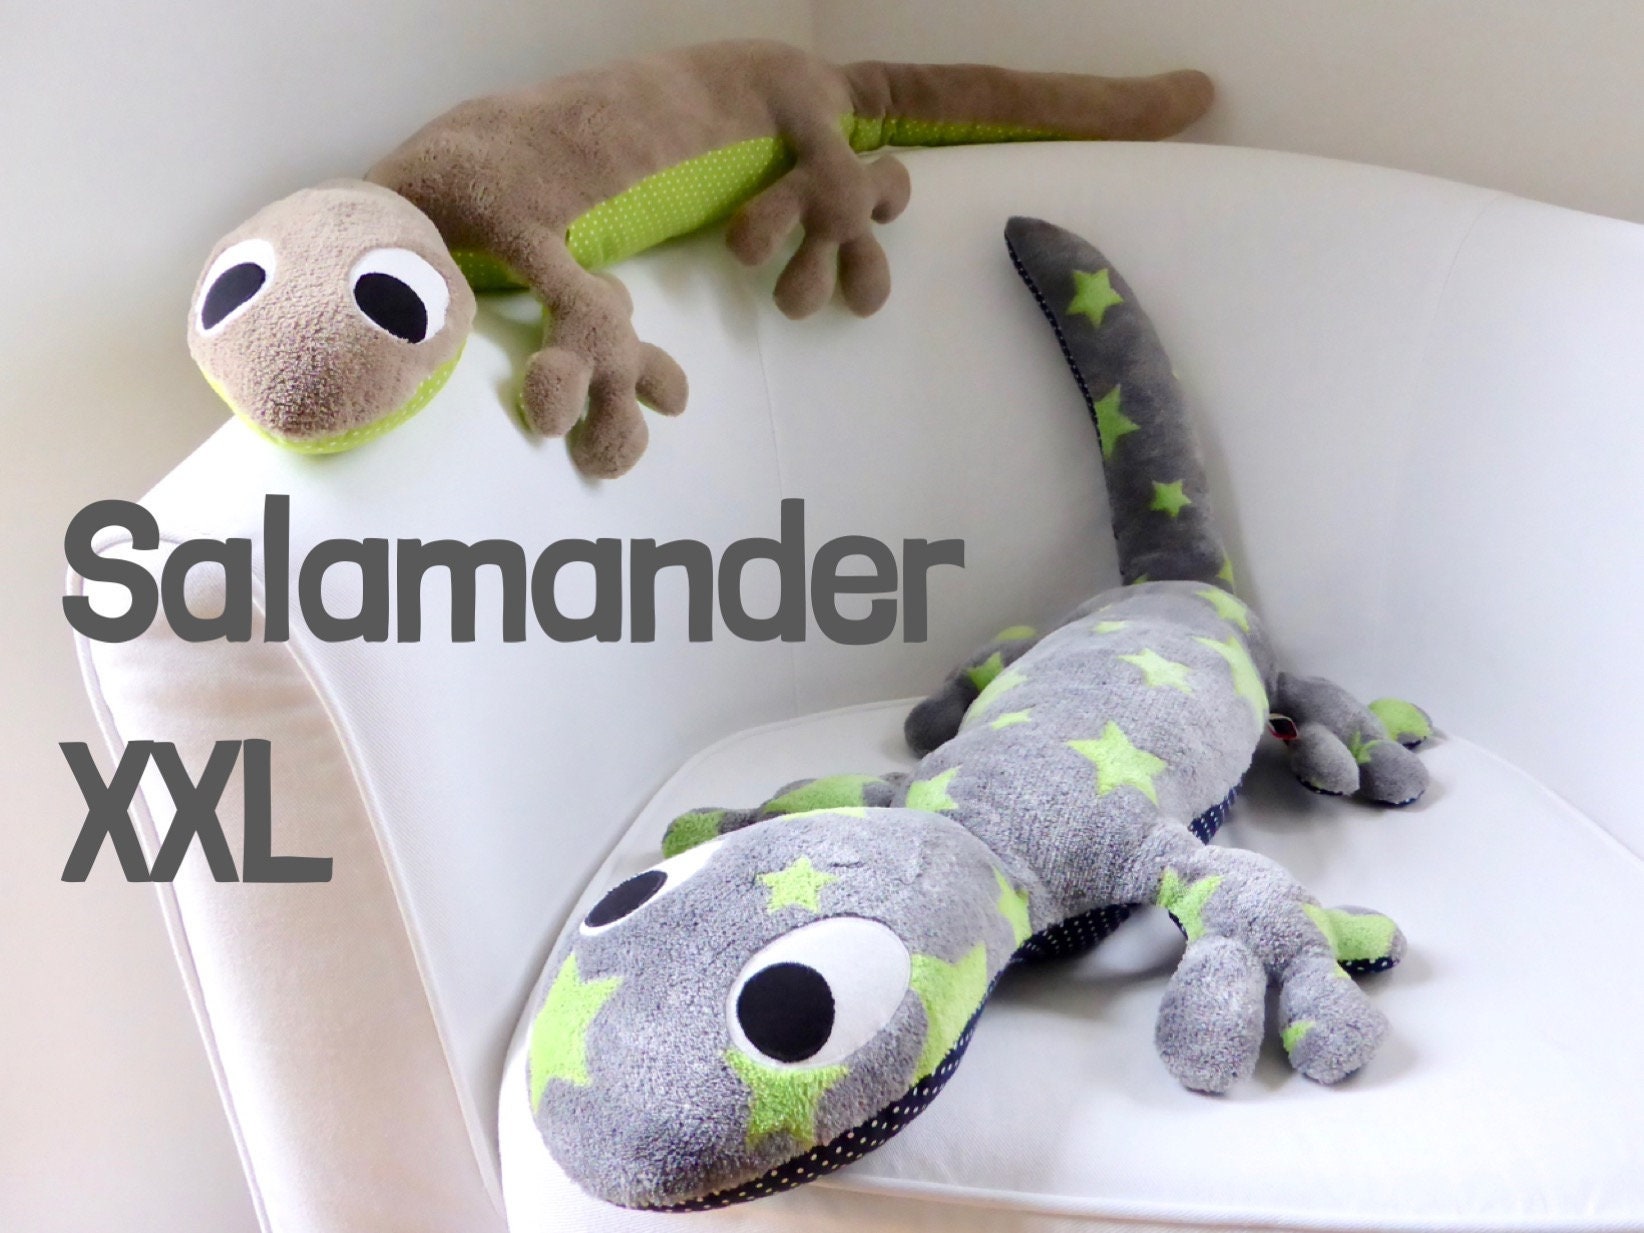 Salamander xxl kuscheltier for sale  